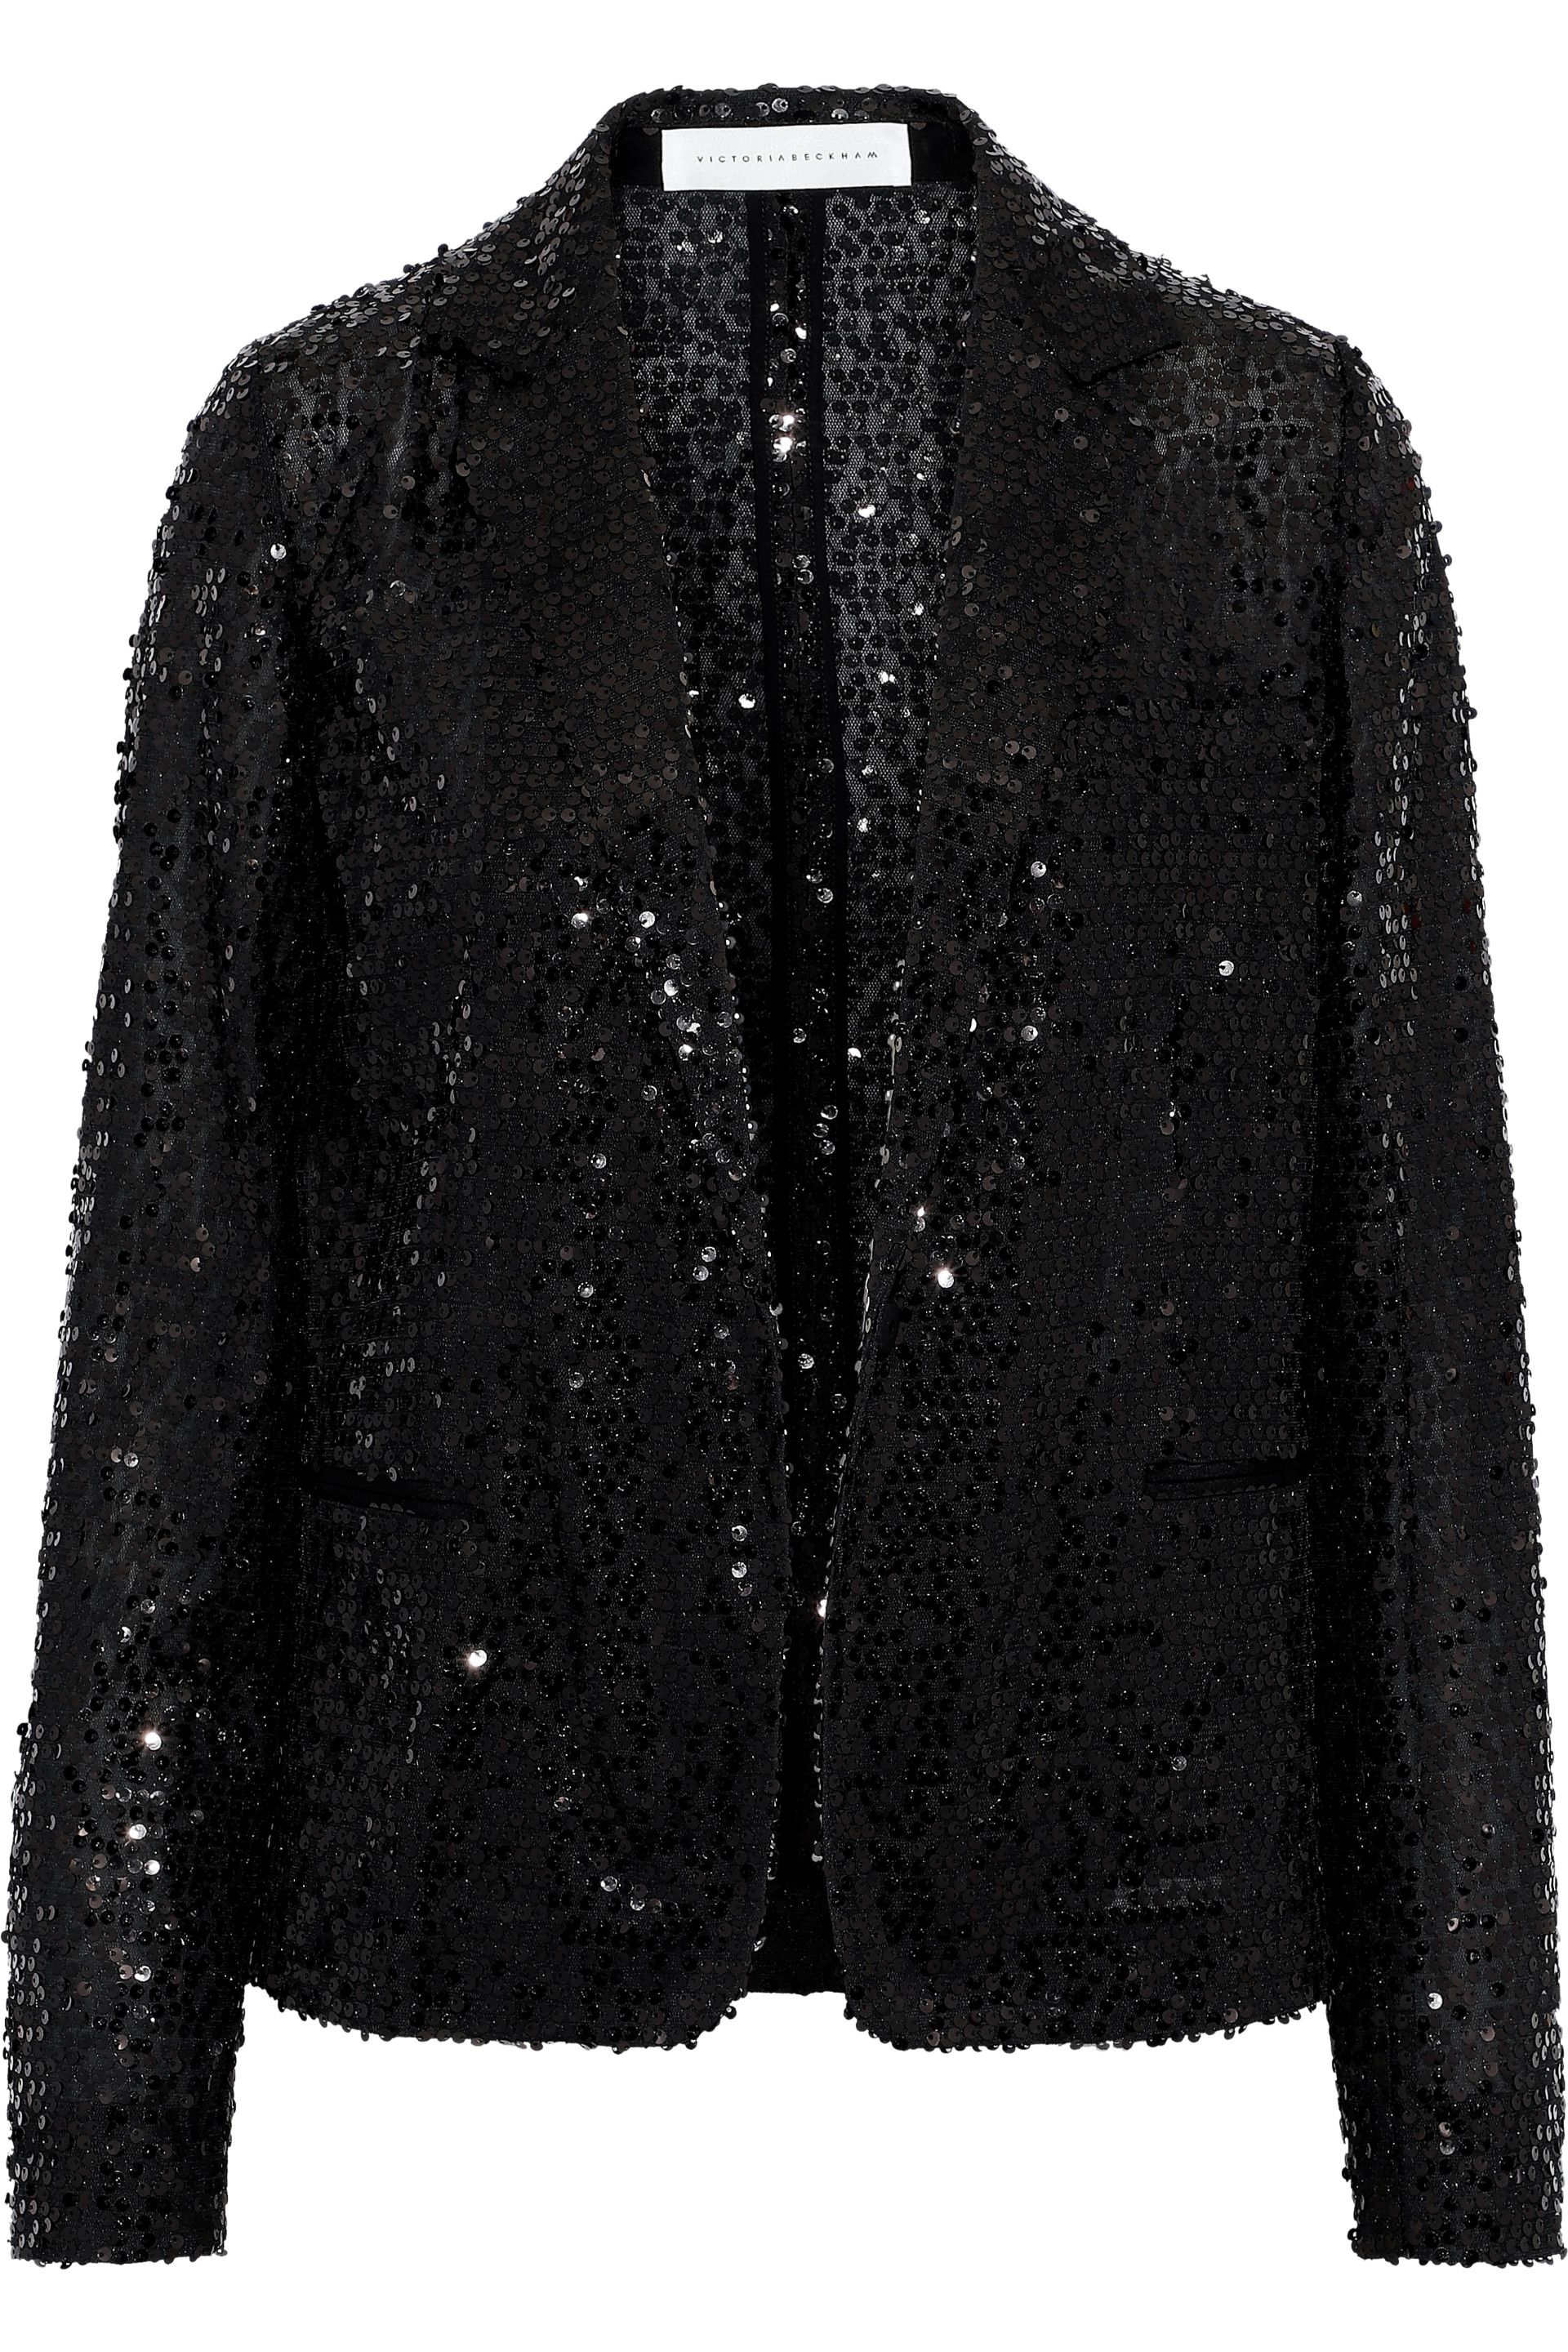 Designer Embellished Jackets | Sale Up To 70% Off At THE OUTNET